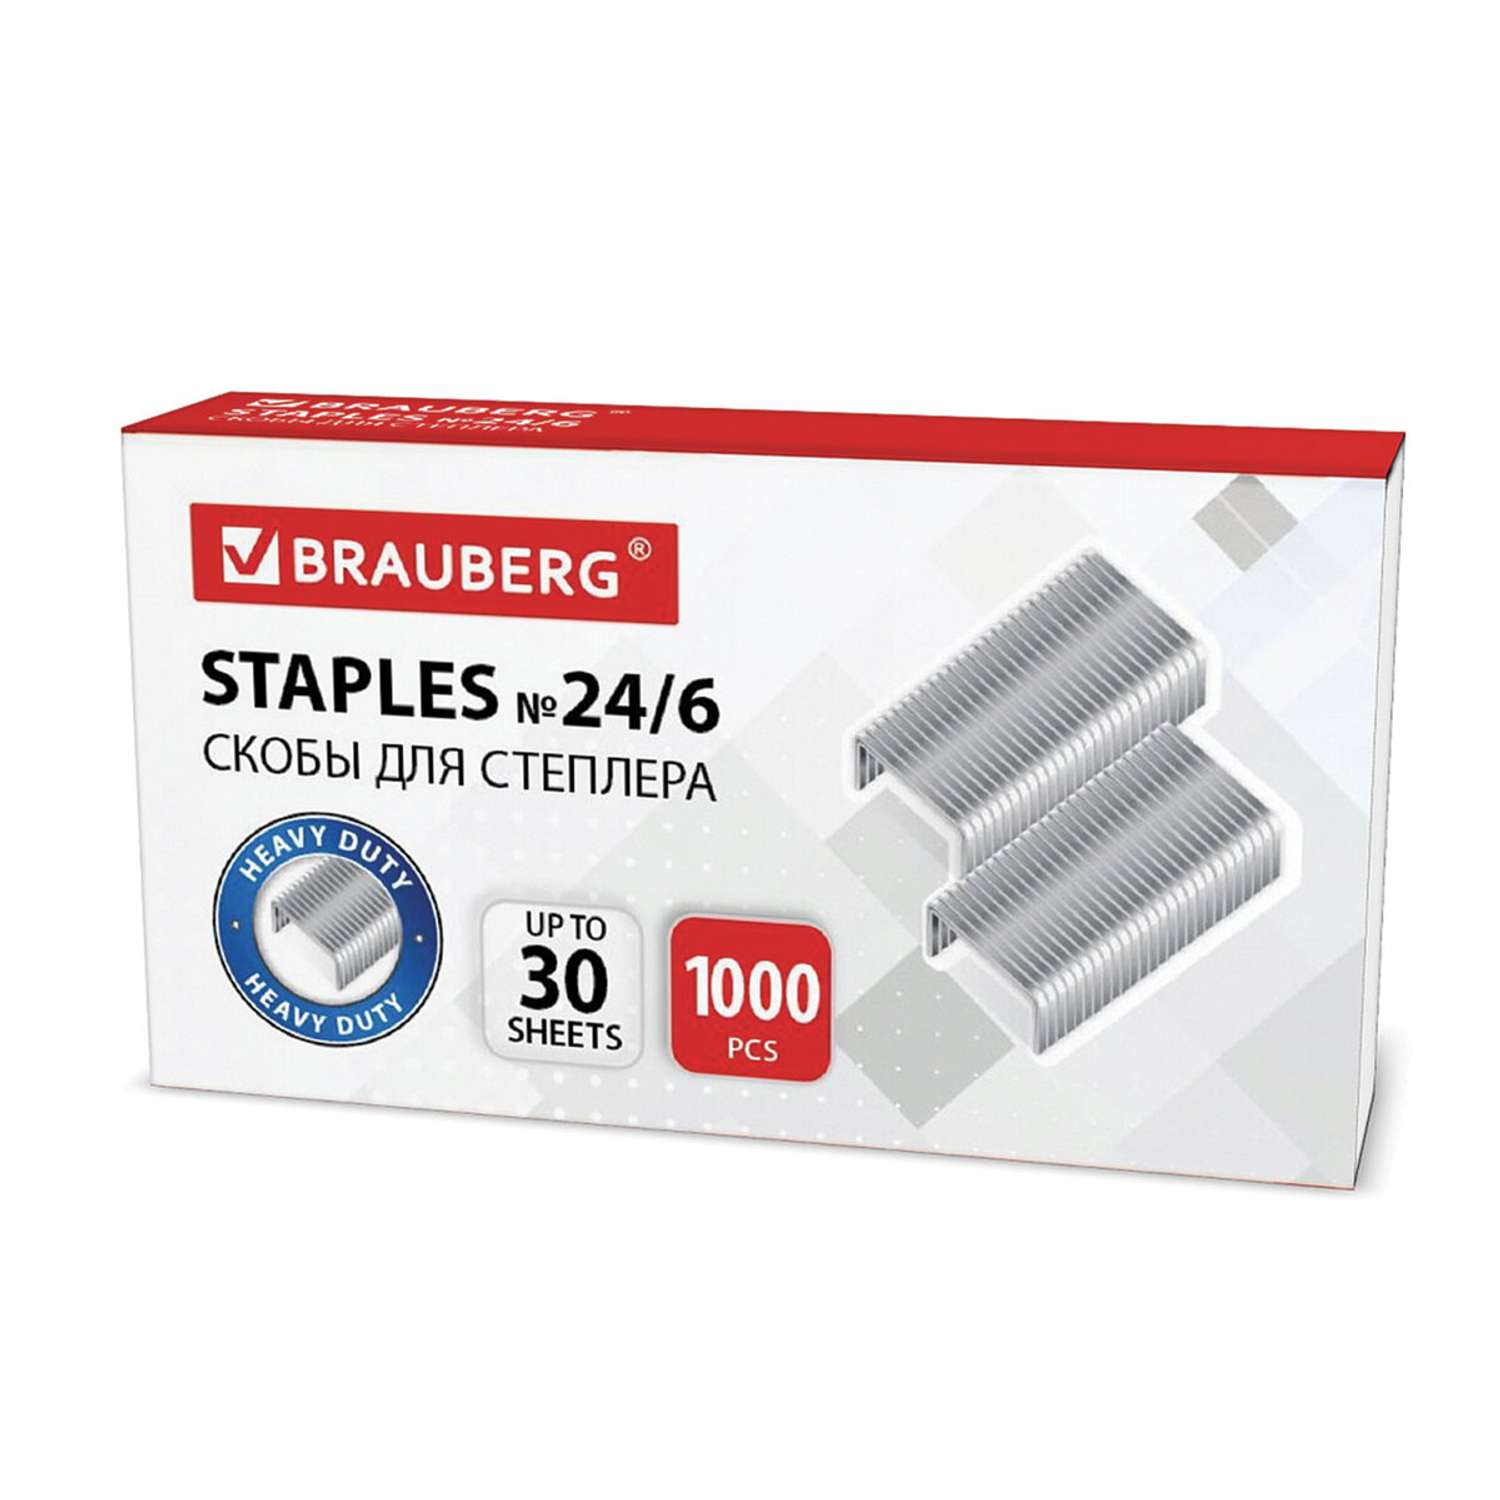 Скобы Brauberg для степлера №24/6 комплект 10 пачек по 1000 шт - фото 1